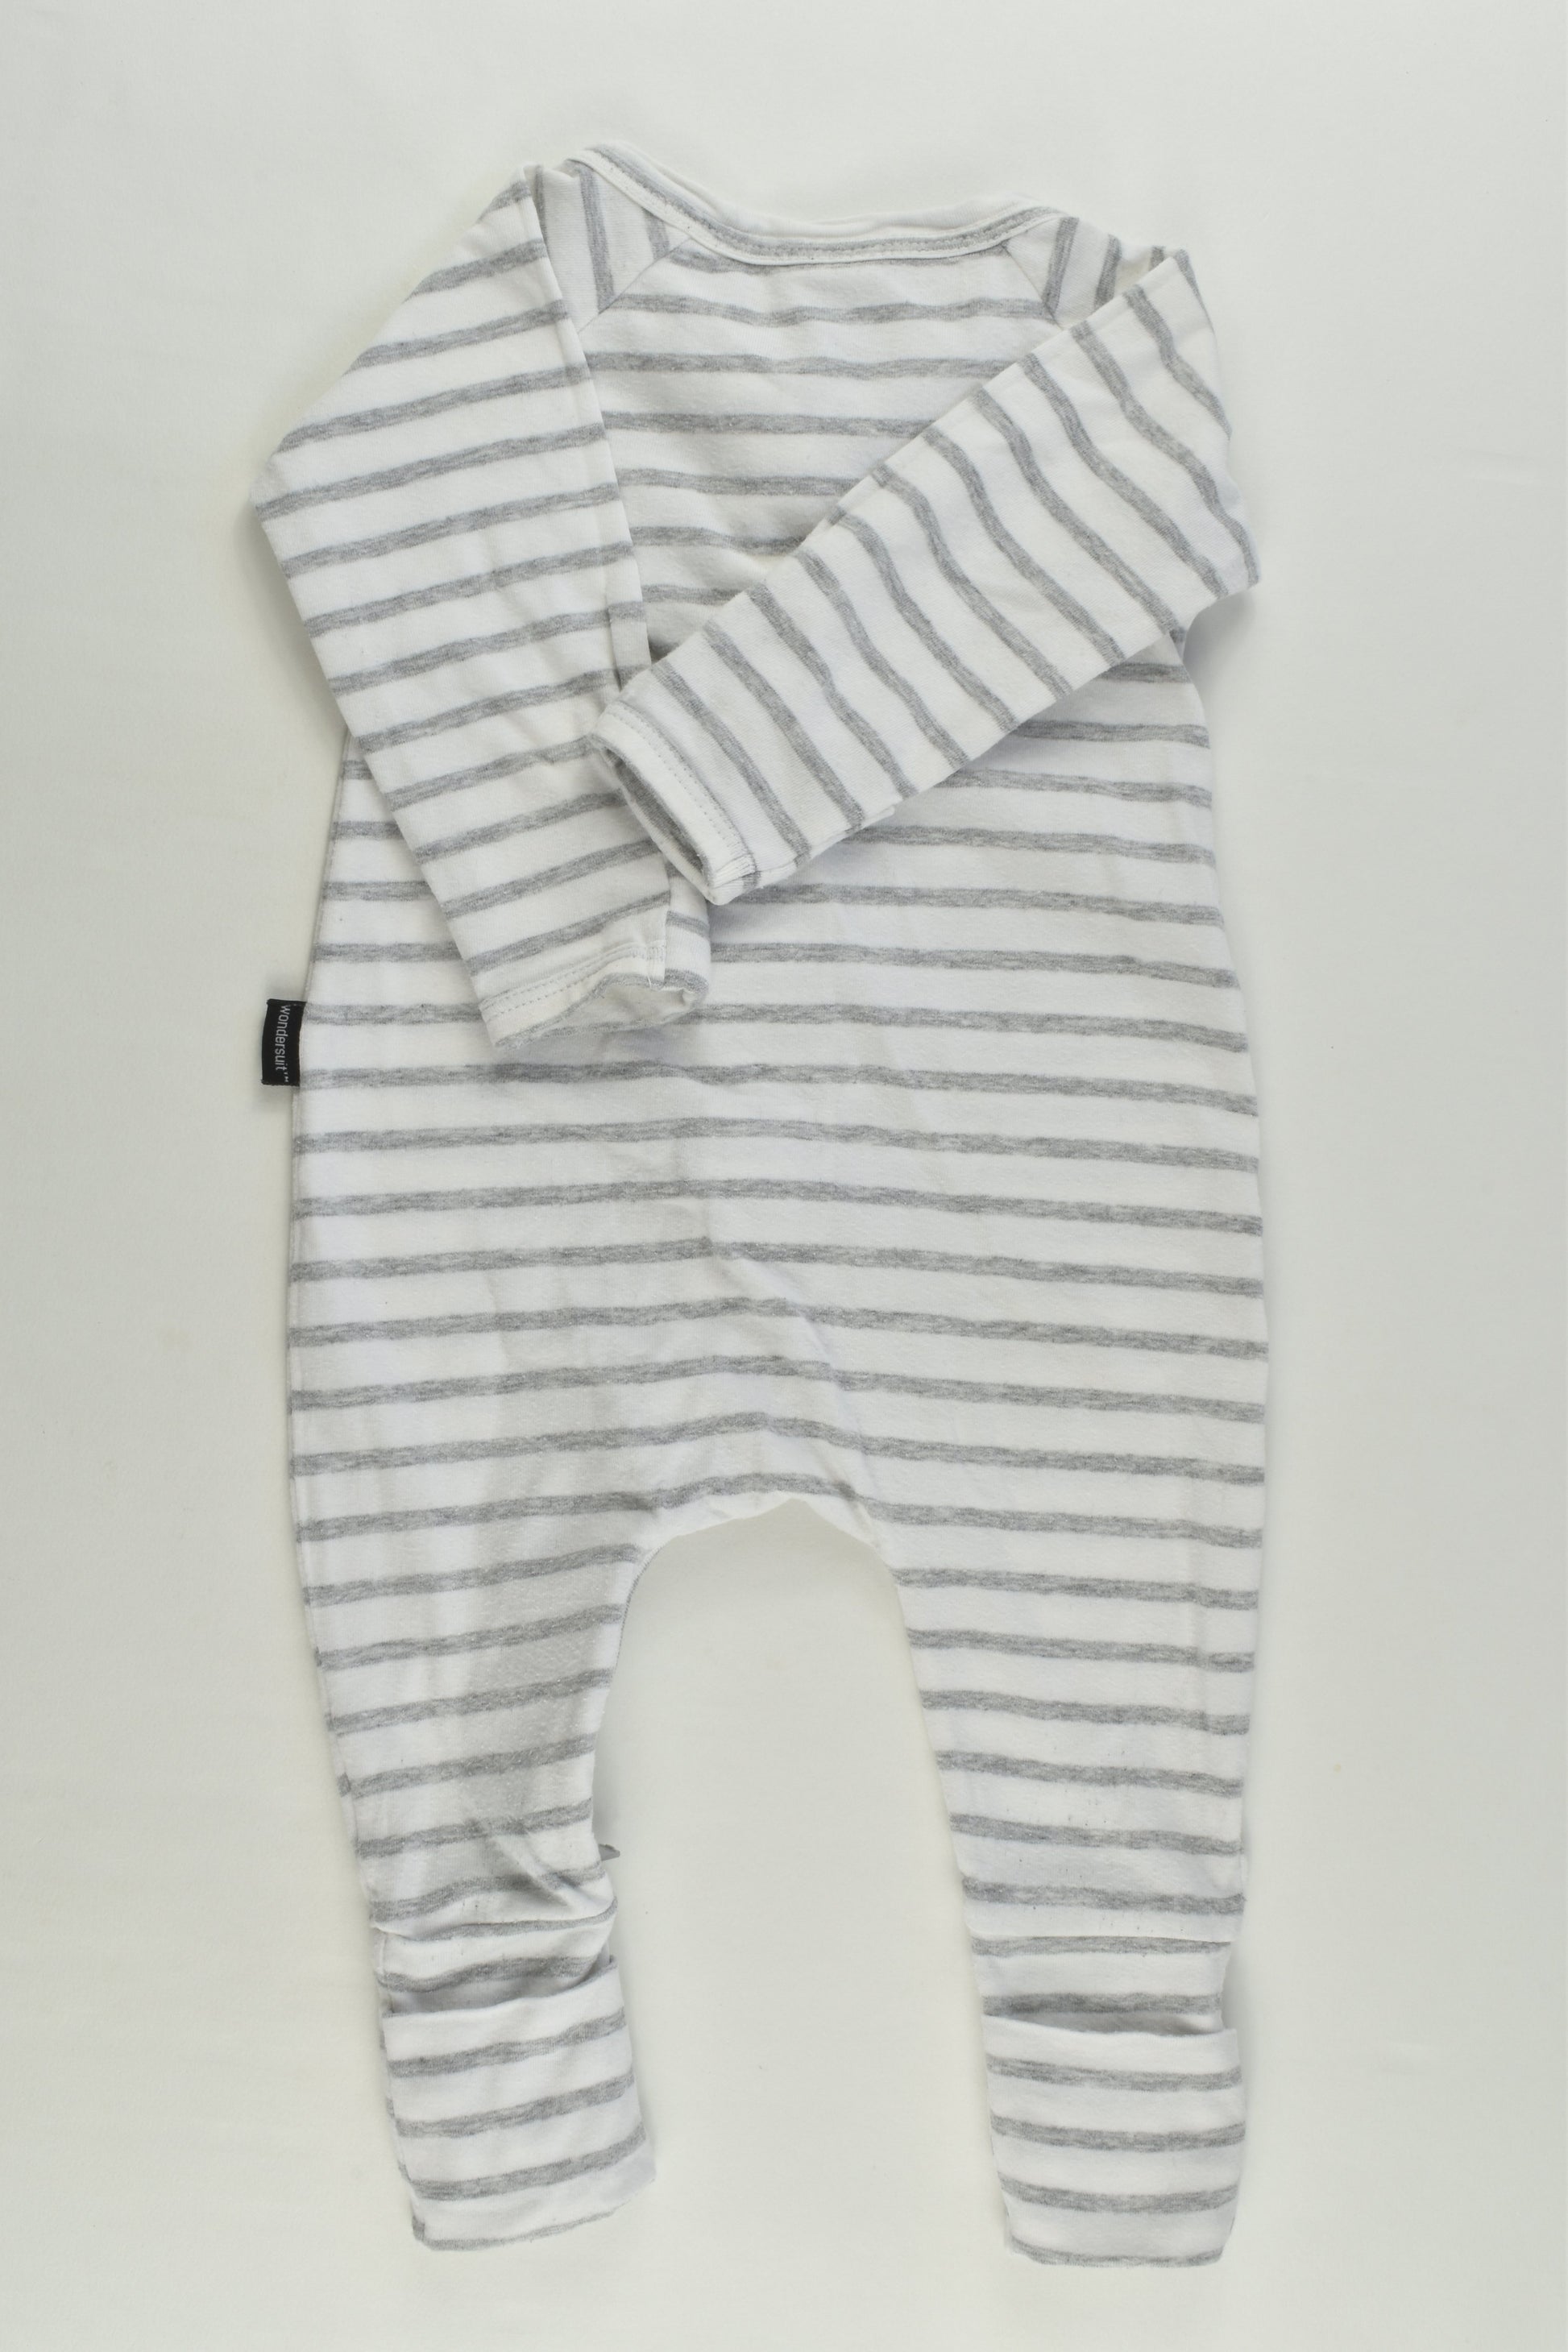 Bonds Size 000 (0-3 months) Striped Wondersuit